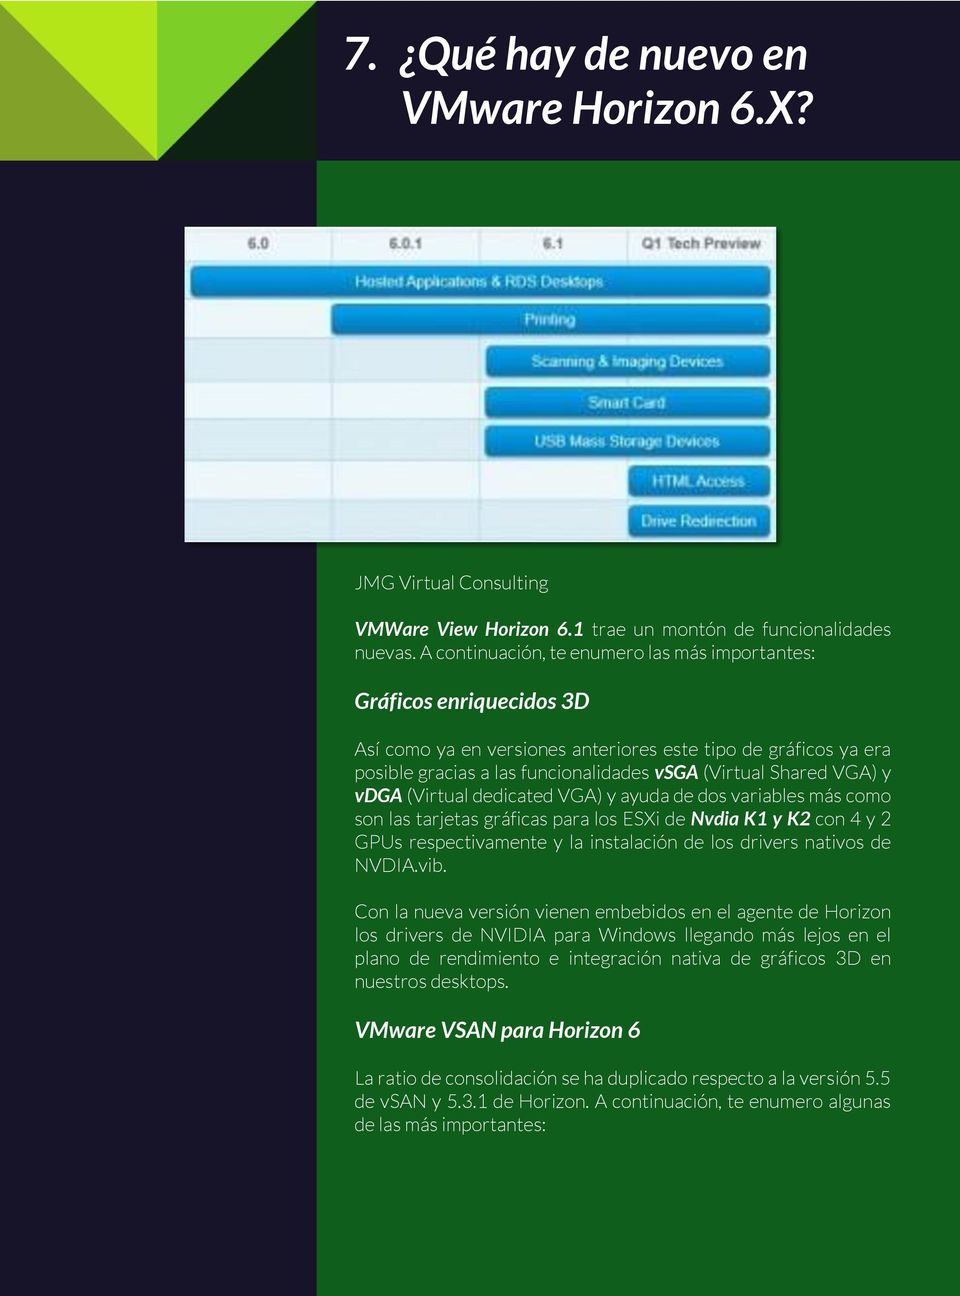 VGA) y vdga (Virtual dedicated VGA) y ayuda de dos variables más como son las tarjetas gráficas para los ESXi de Nvdia K1 y K2 con 4 y 2 GPUs respectivamente y la instalación de los drivers nativos